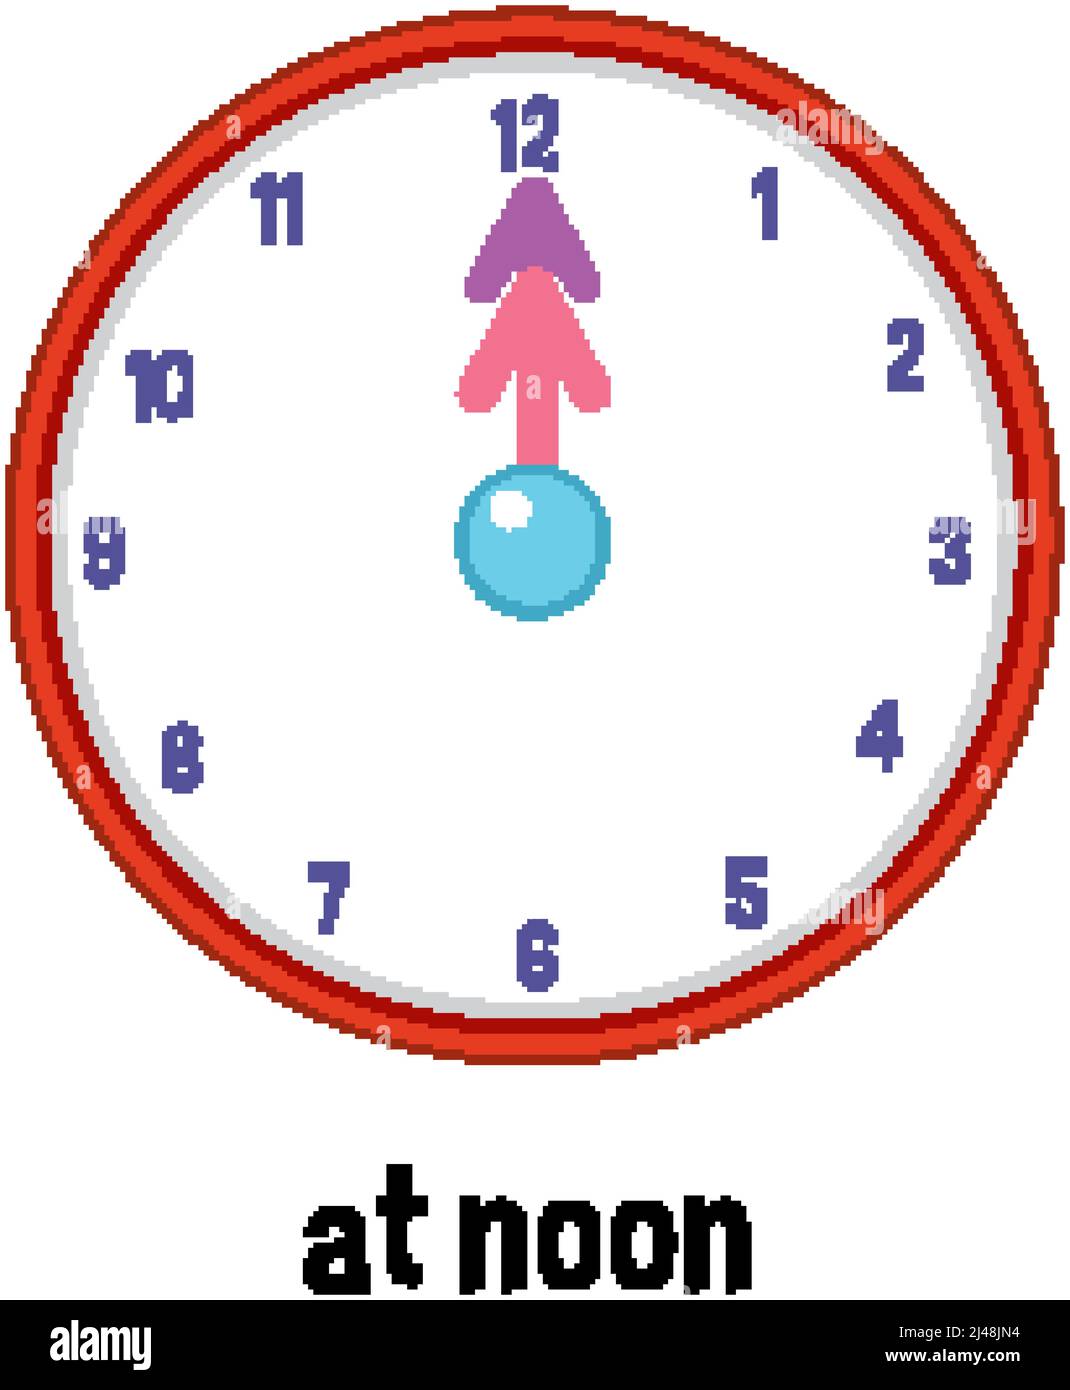 Prépositions de l'heure en anglais avec illustration de l'horloge à midi  Image Vectorielle Stock - Alamy